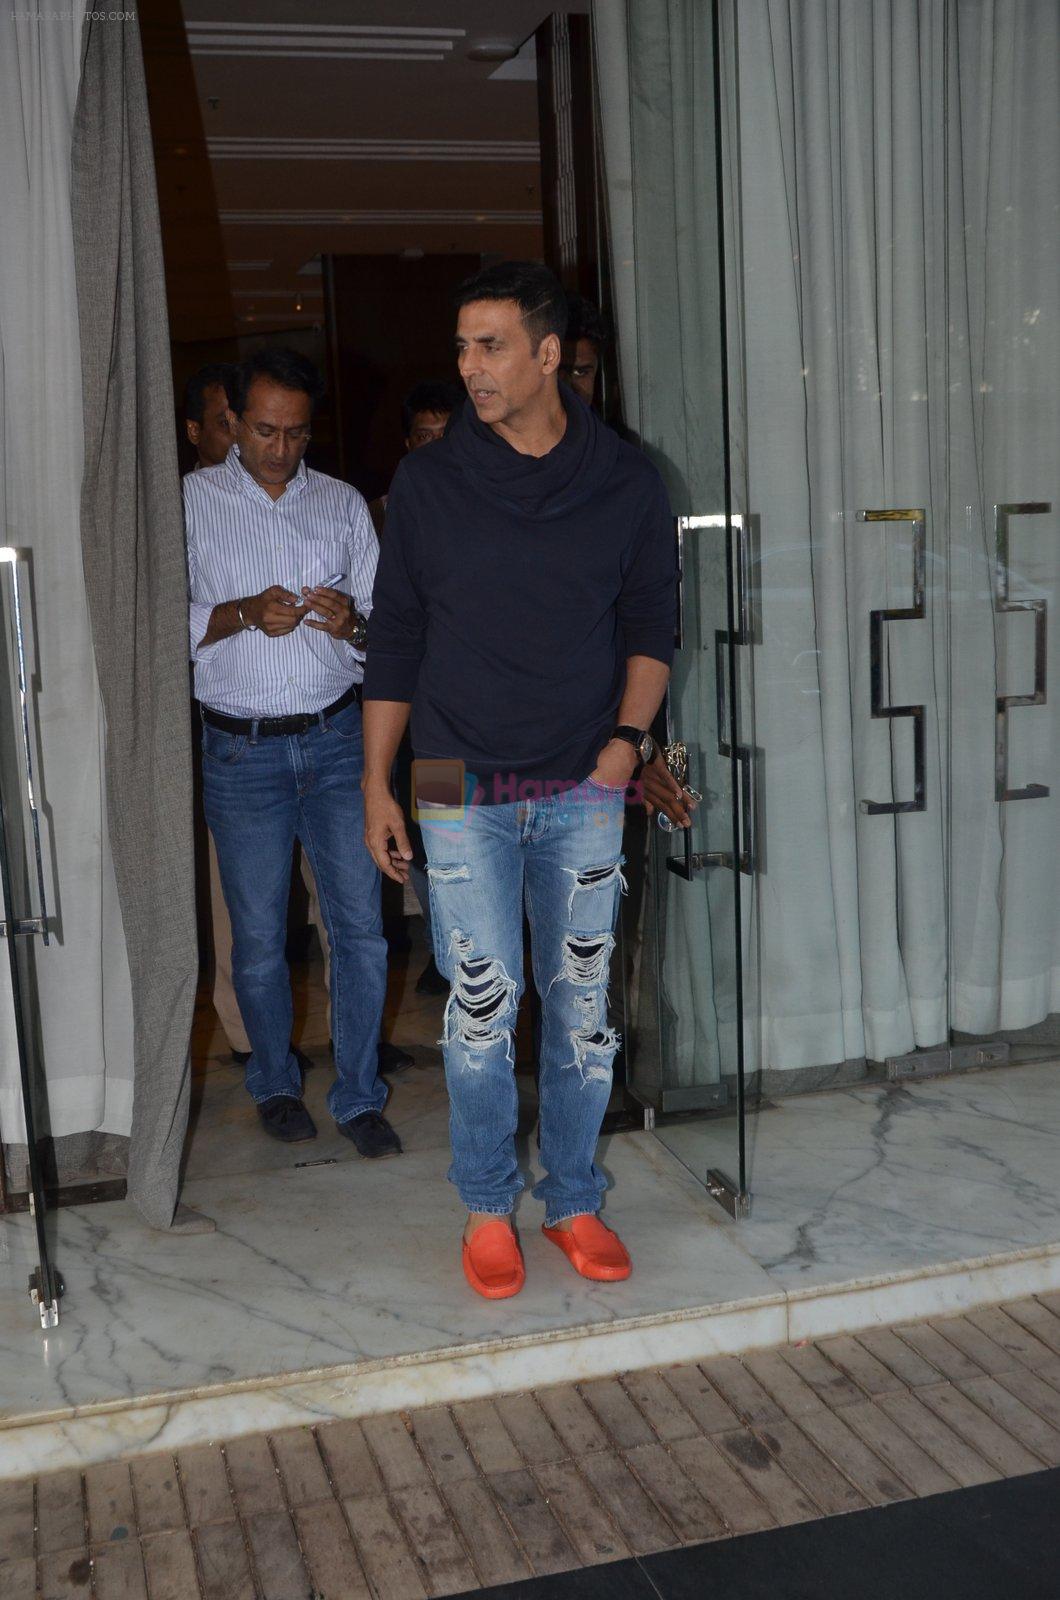 Akshay Kumar snapped in Mumbai on 28th May 2016